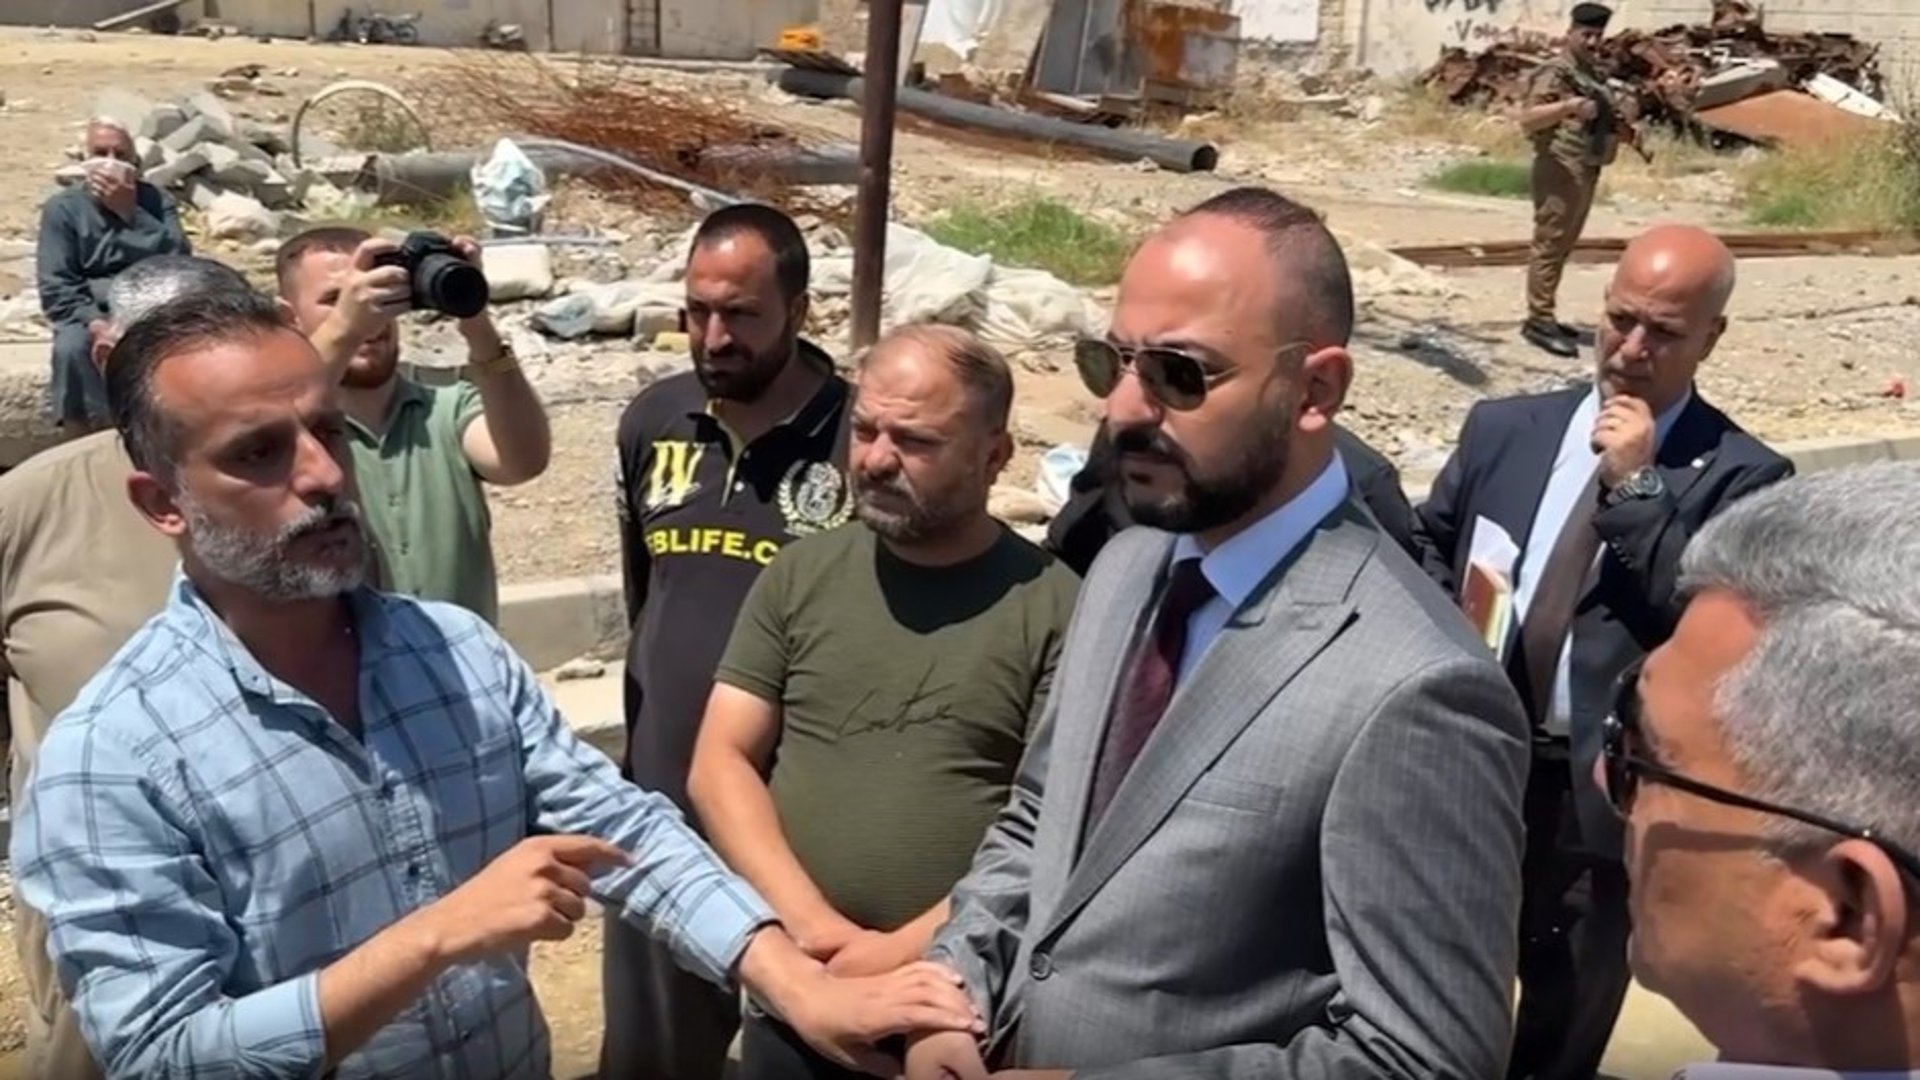 فيديو: عتاب شديد من حي الطيران في الموصل.. ماذا لو كان جيراننا مسؤولاً كبيراً؟!